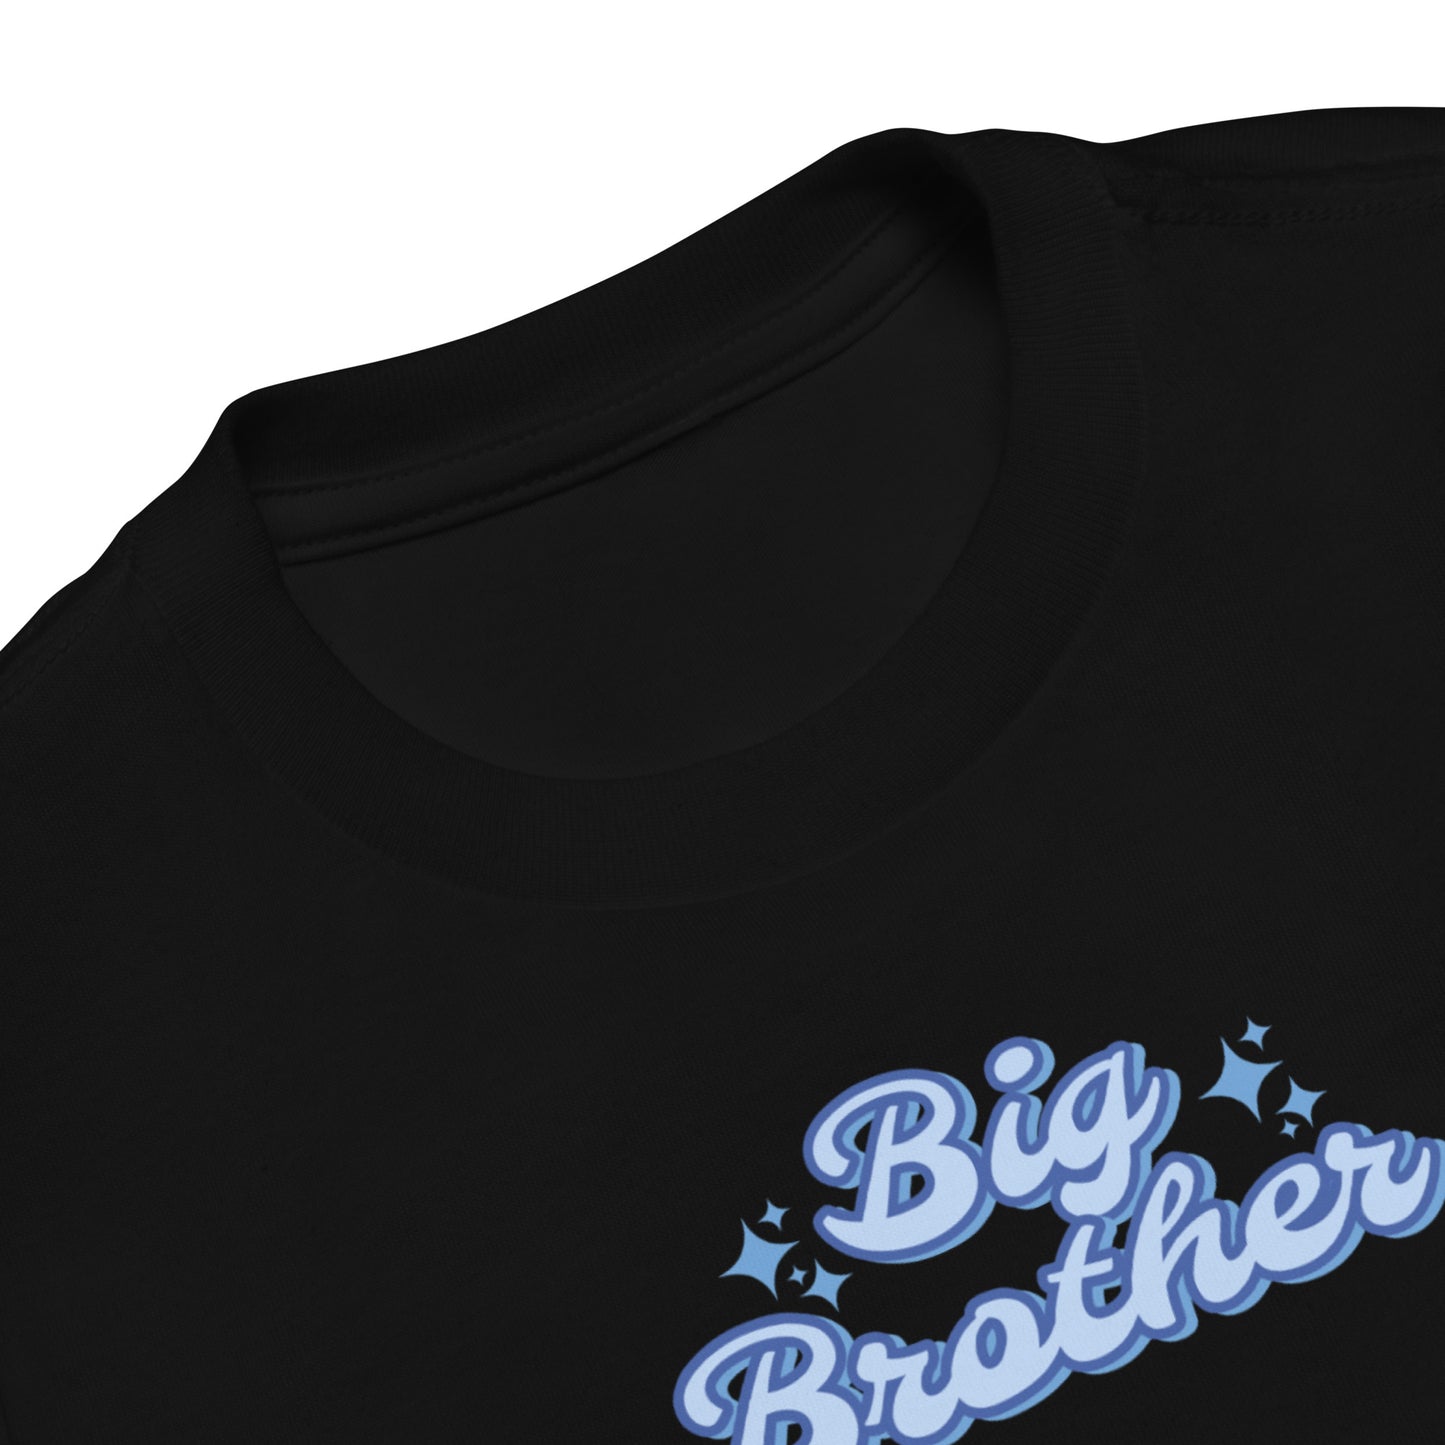 Big Brother | T-Shirt | Toddler